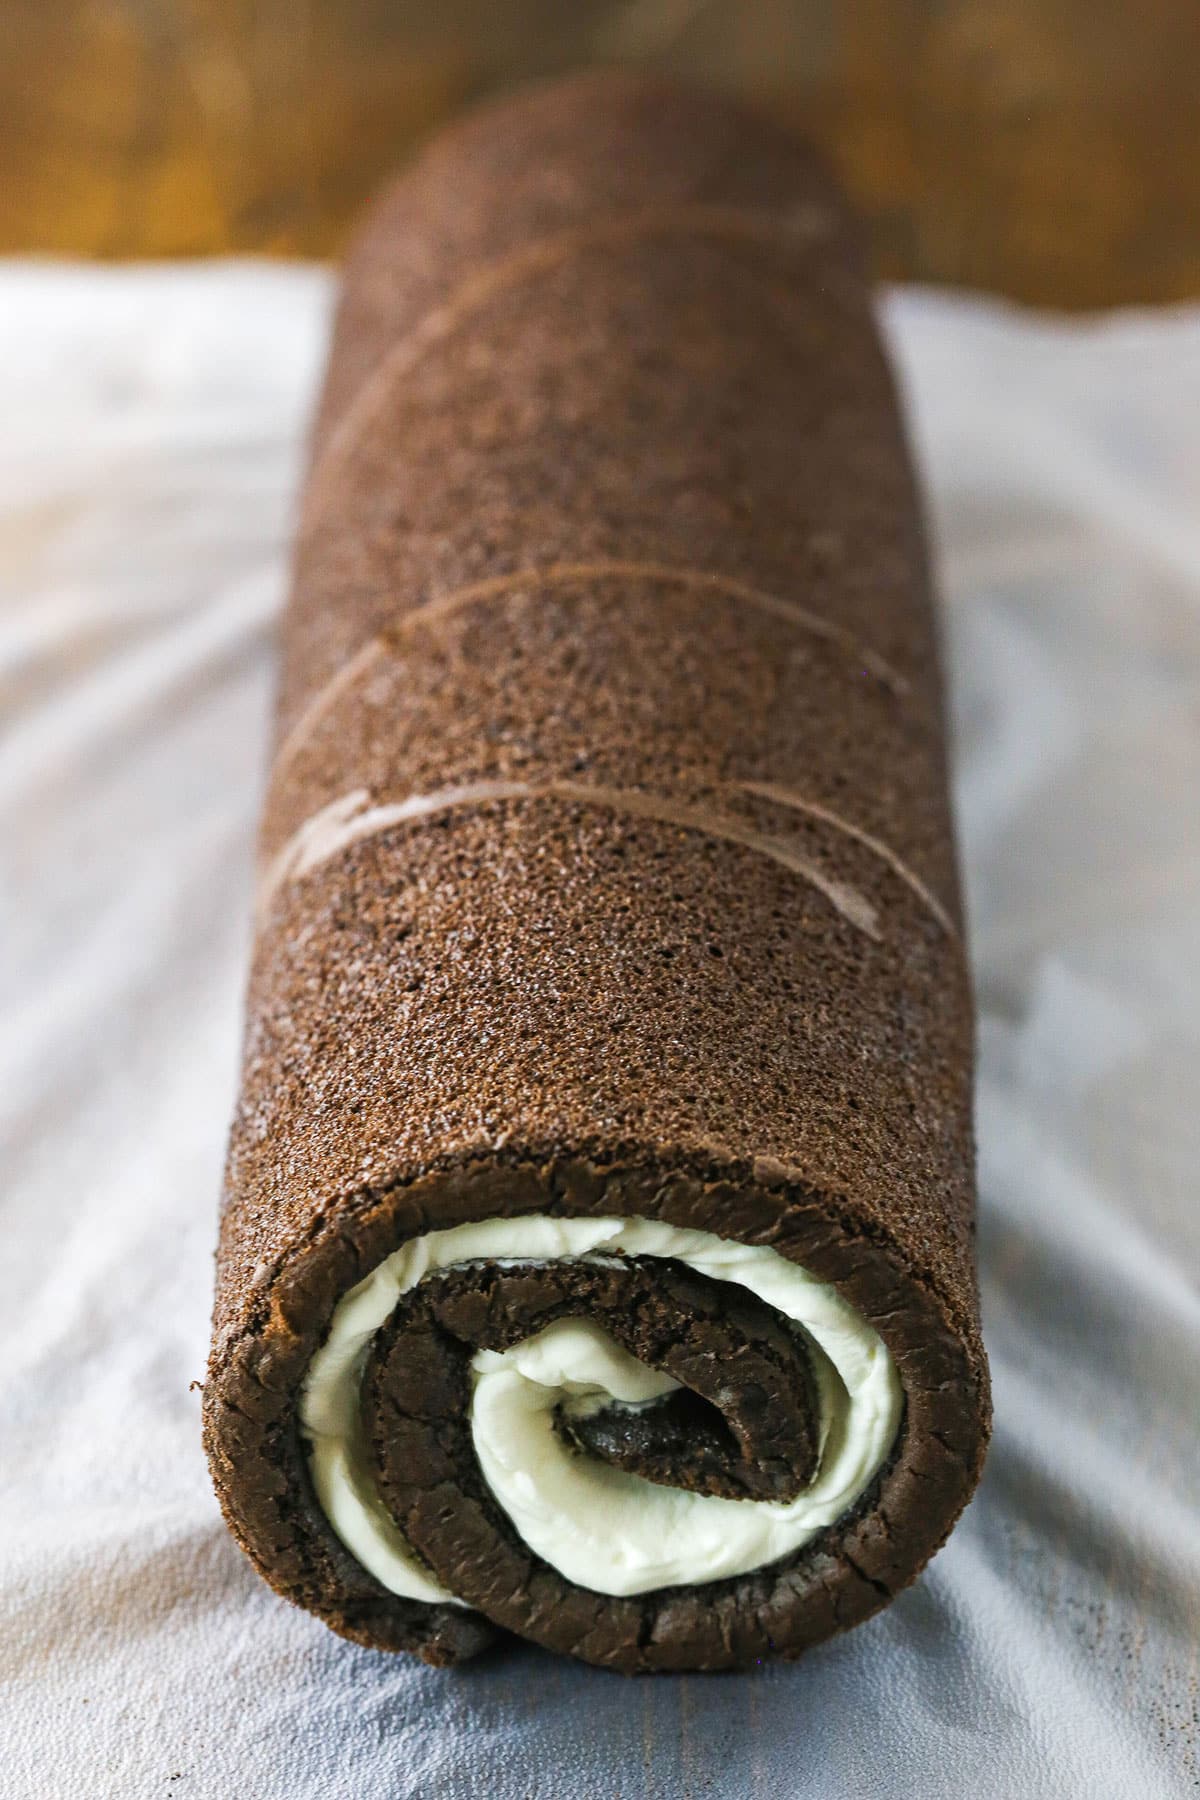 Yule Log Cake - The Seaside Baker